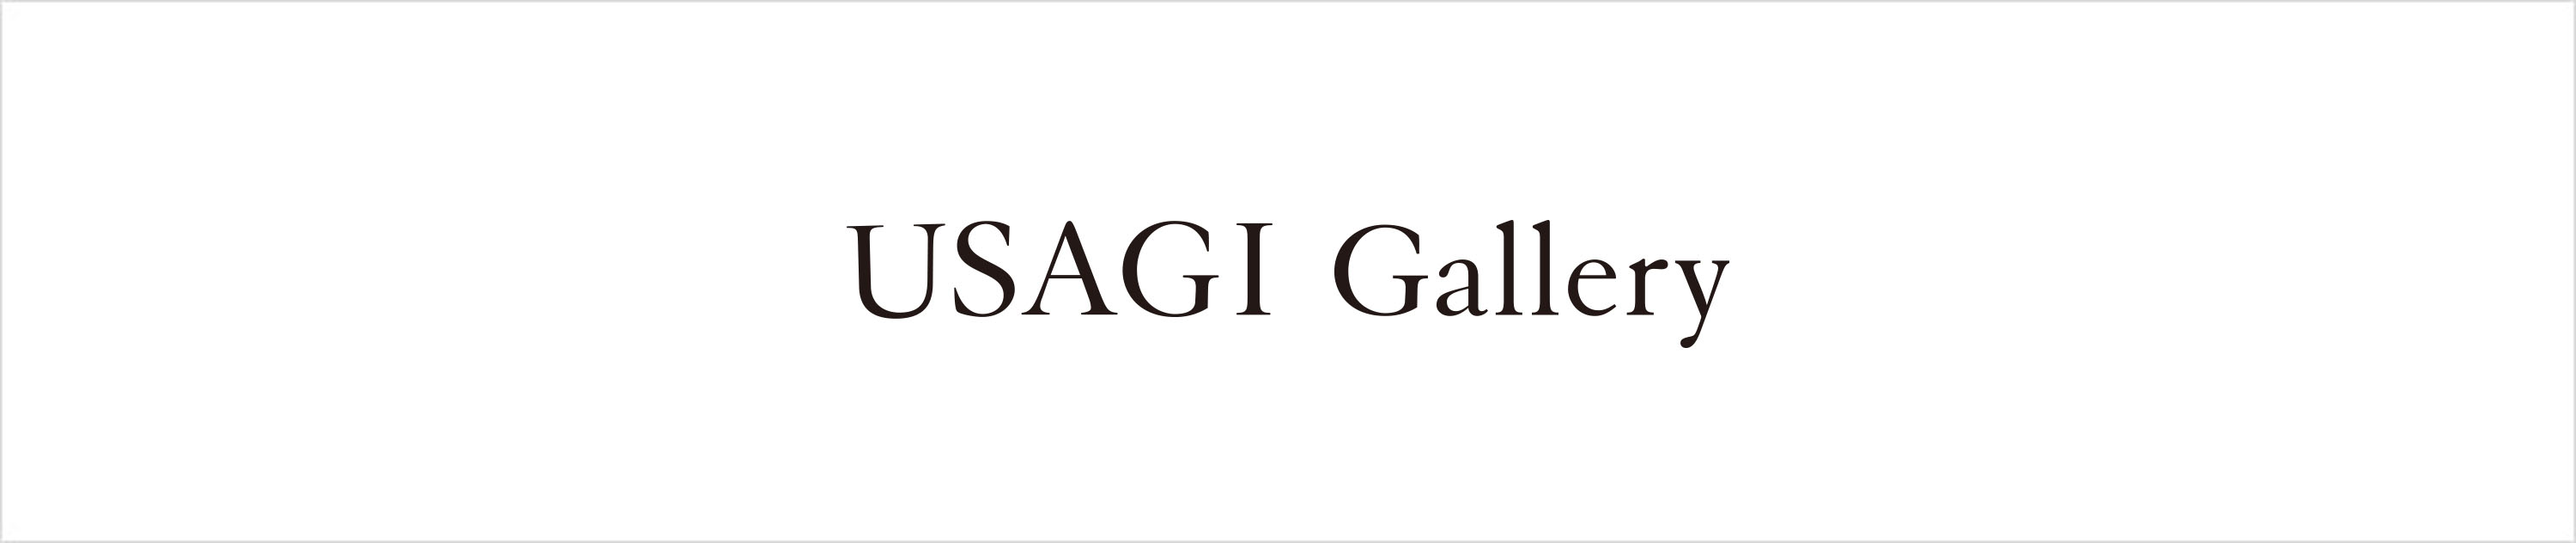 USAGI Gallery(ウサギギャラリー)